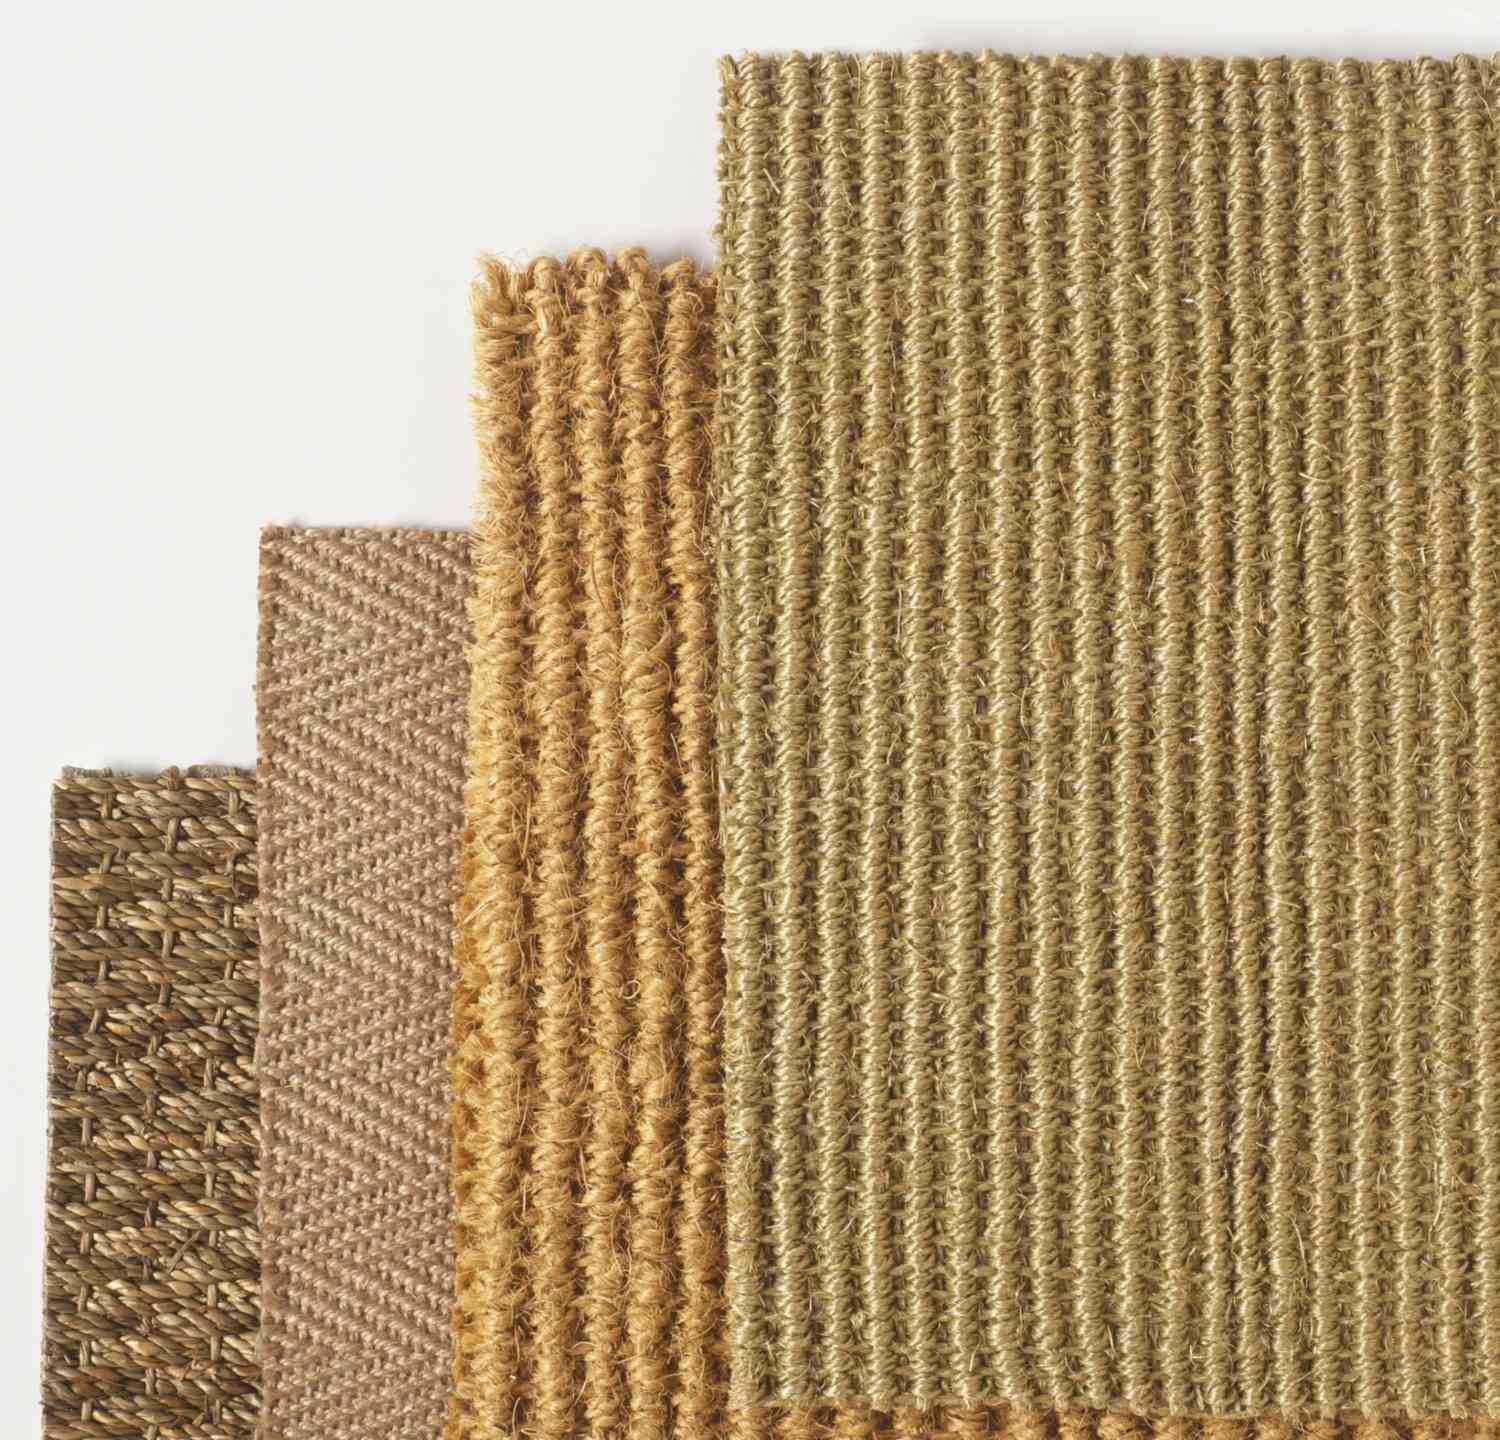 Comparación entre fibras naturales y sintéticas para alfombras